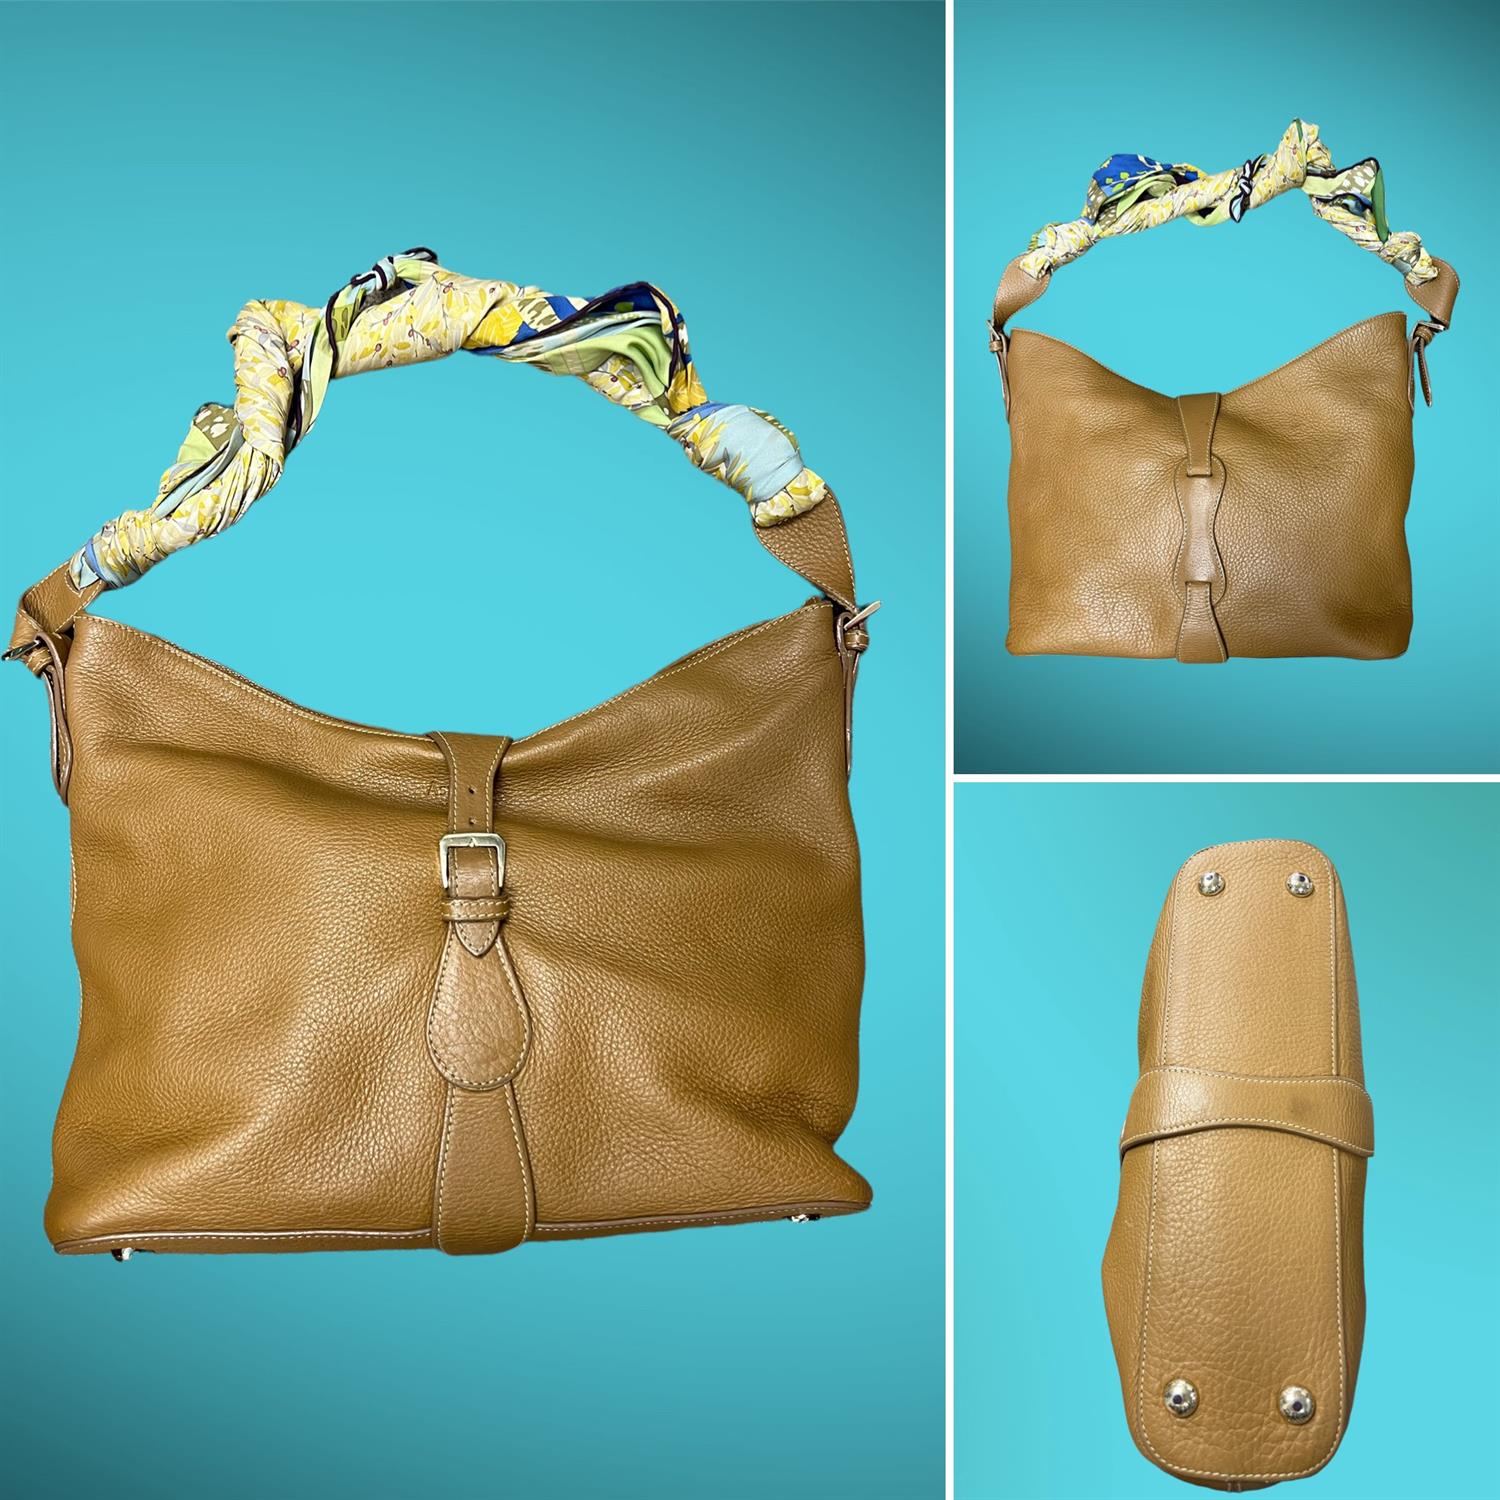 ASPREY LONDON superb Toffee coloured leather shoulder handbag. Silk ASPREY rolled scarf handle with